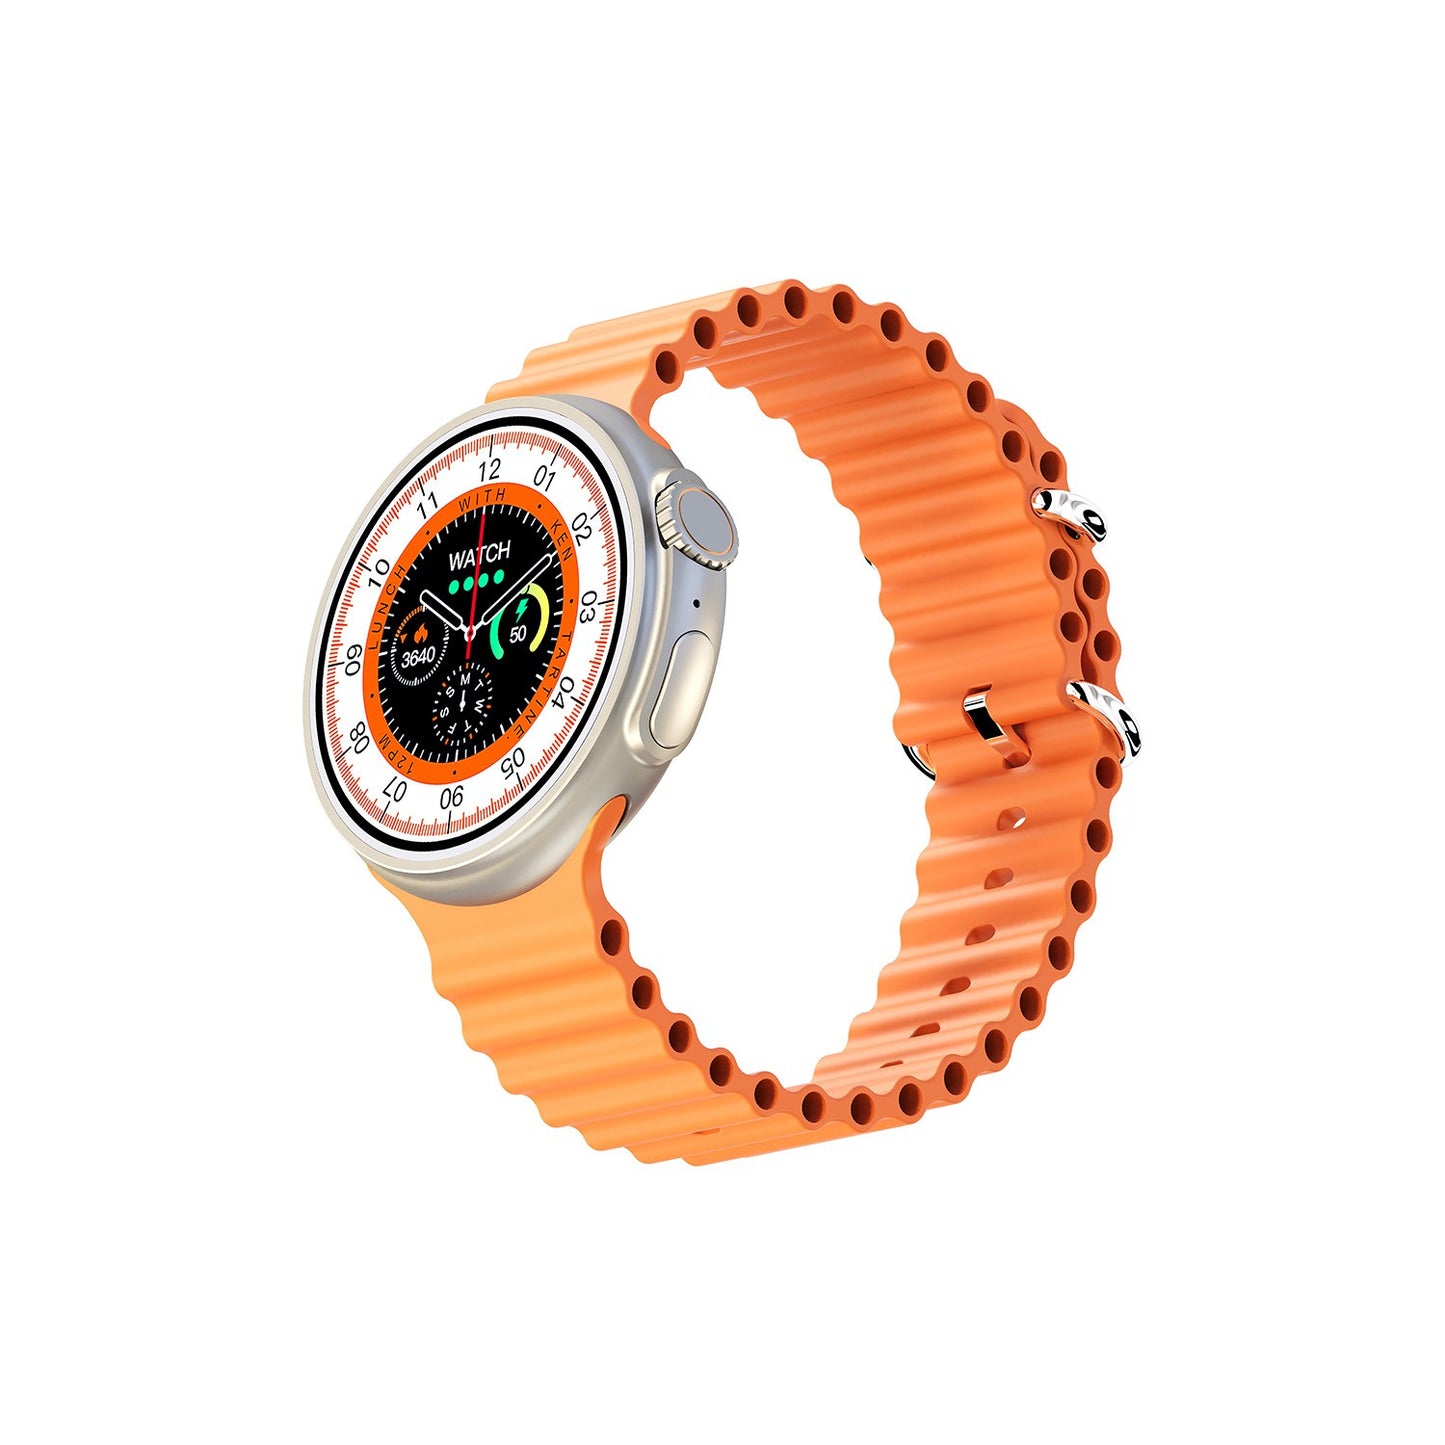 ساعة Porodo Ultra Evo الذكية بشاشة لمس واسعة 1.51 بوصة - سوار برتقالي